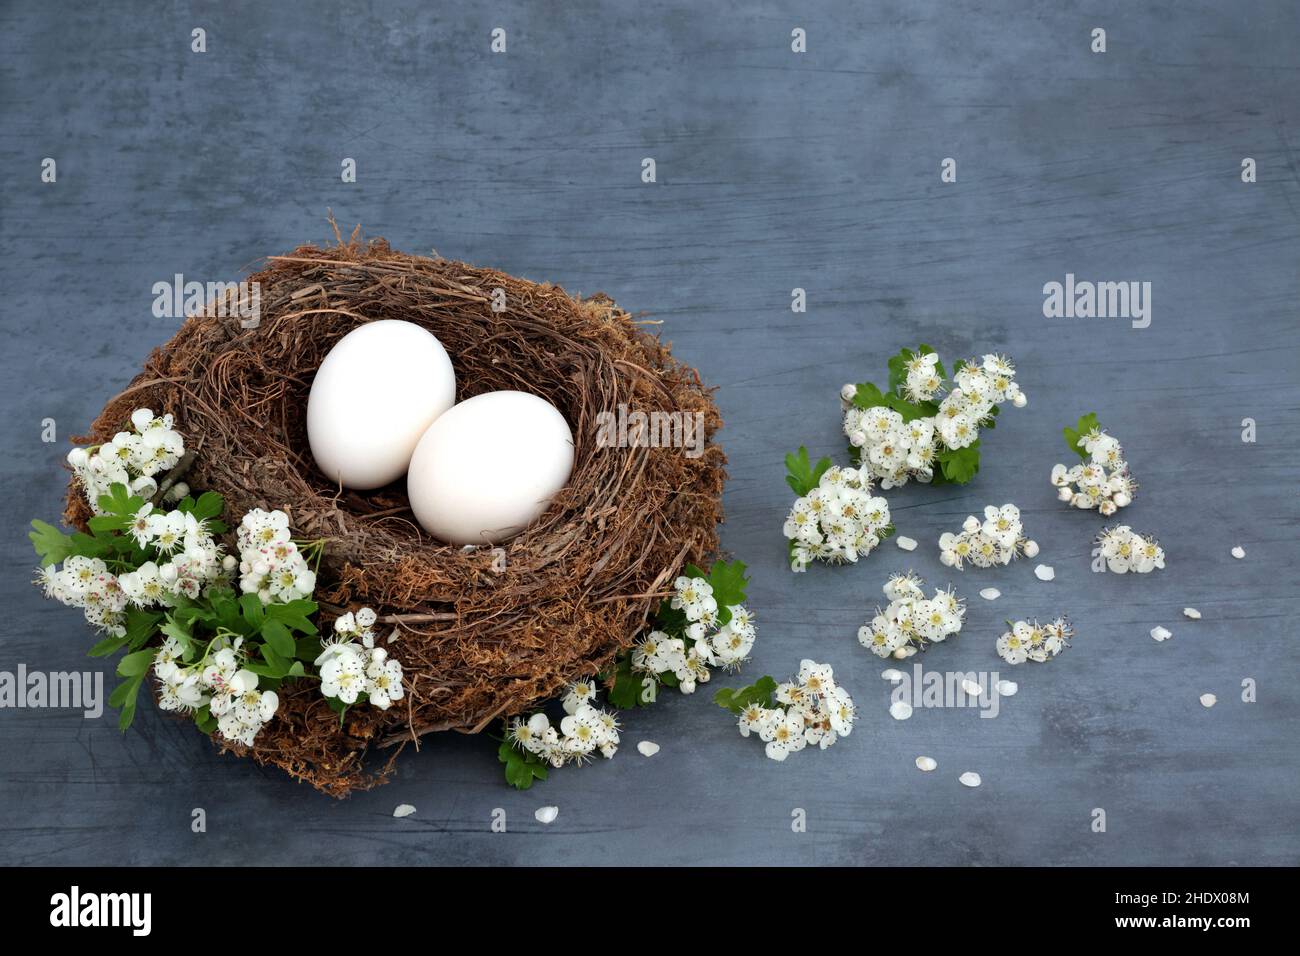 Les oiseaux nichent avec des œufs blancs et des fleurs d'aubépine sur fond bleu tacheté.Concept de la nature alimentaire biologique riche en protéines et en oméga 3. Banque D'Images